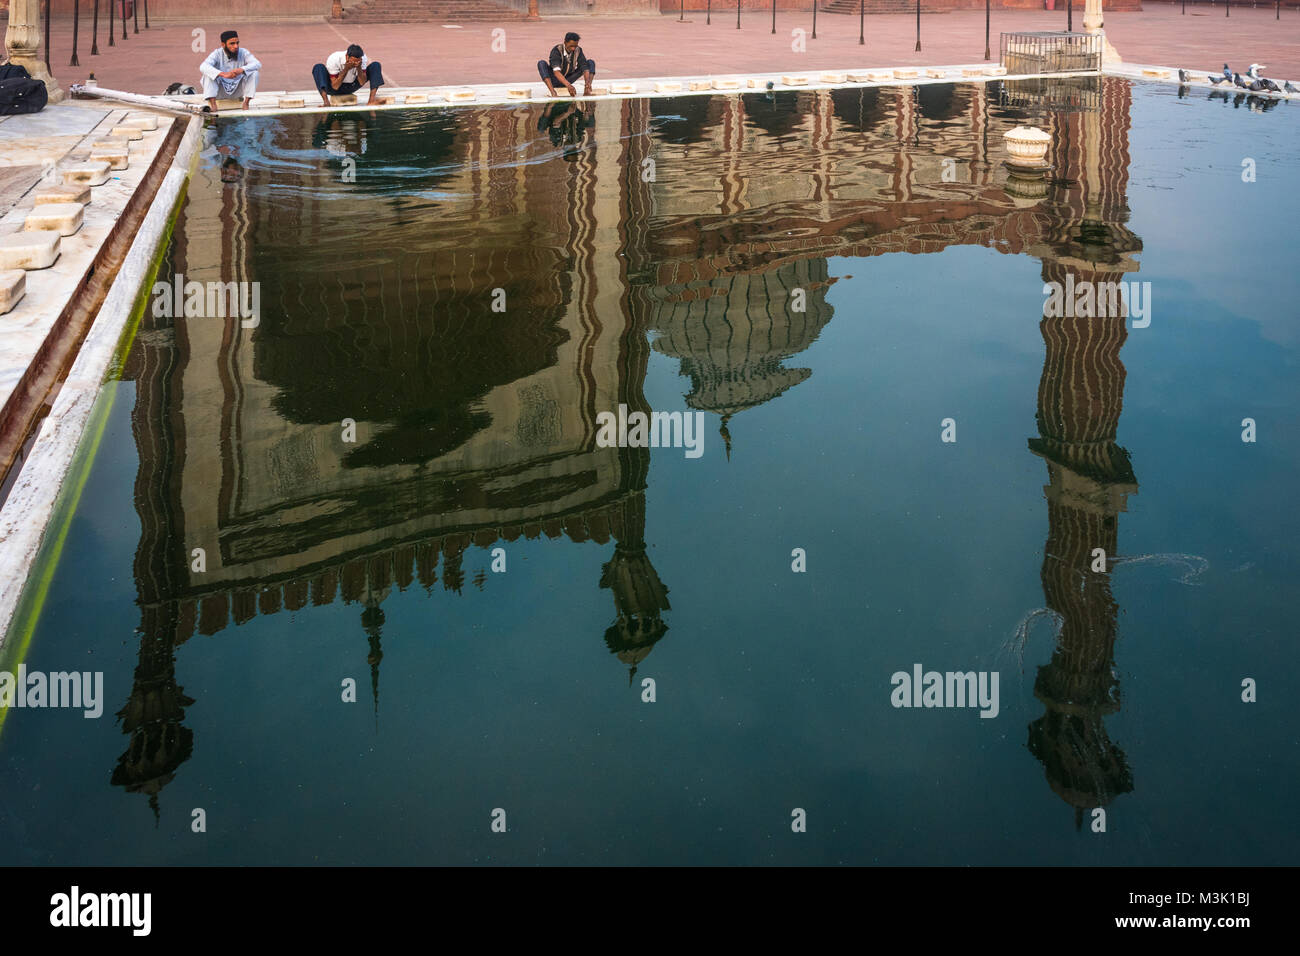 Les pèlerins et les reflets dans l'étang à Jama Masjid, Delhi, Inde. Banque D'Images